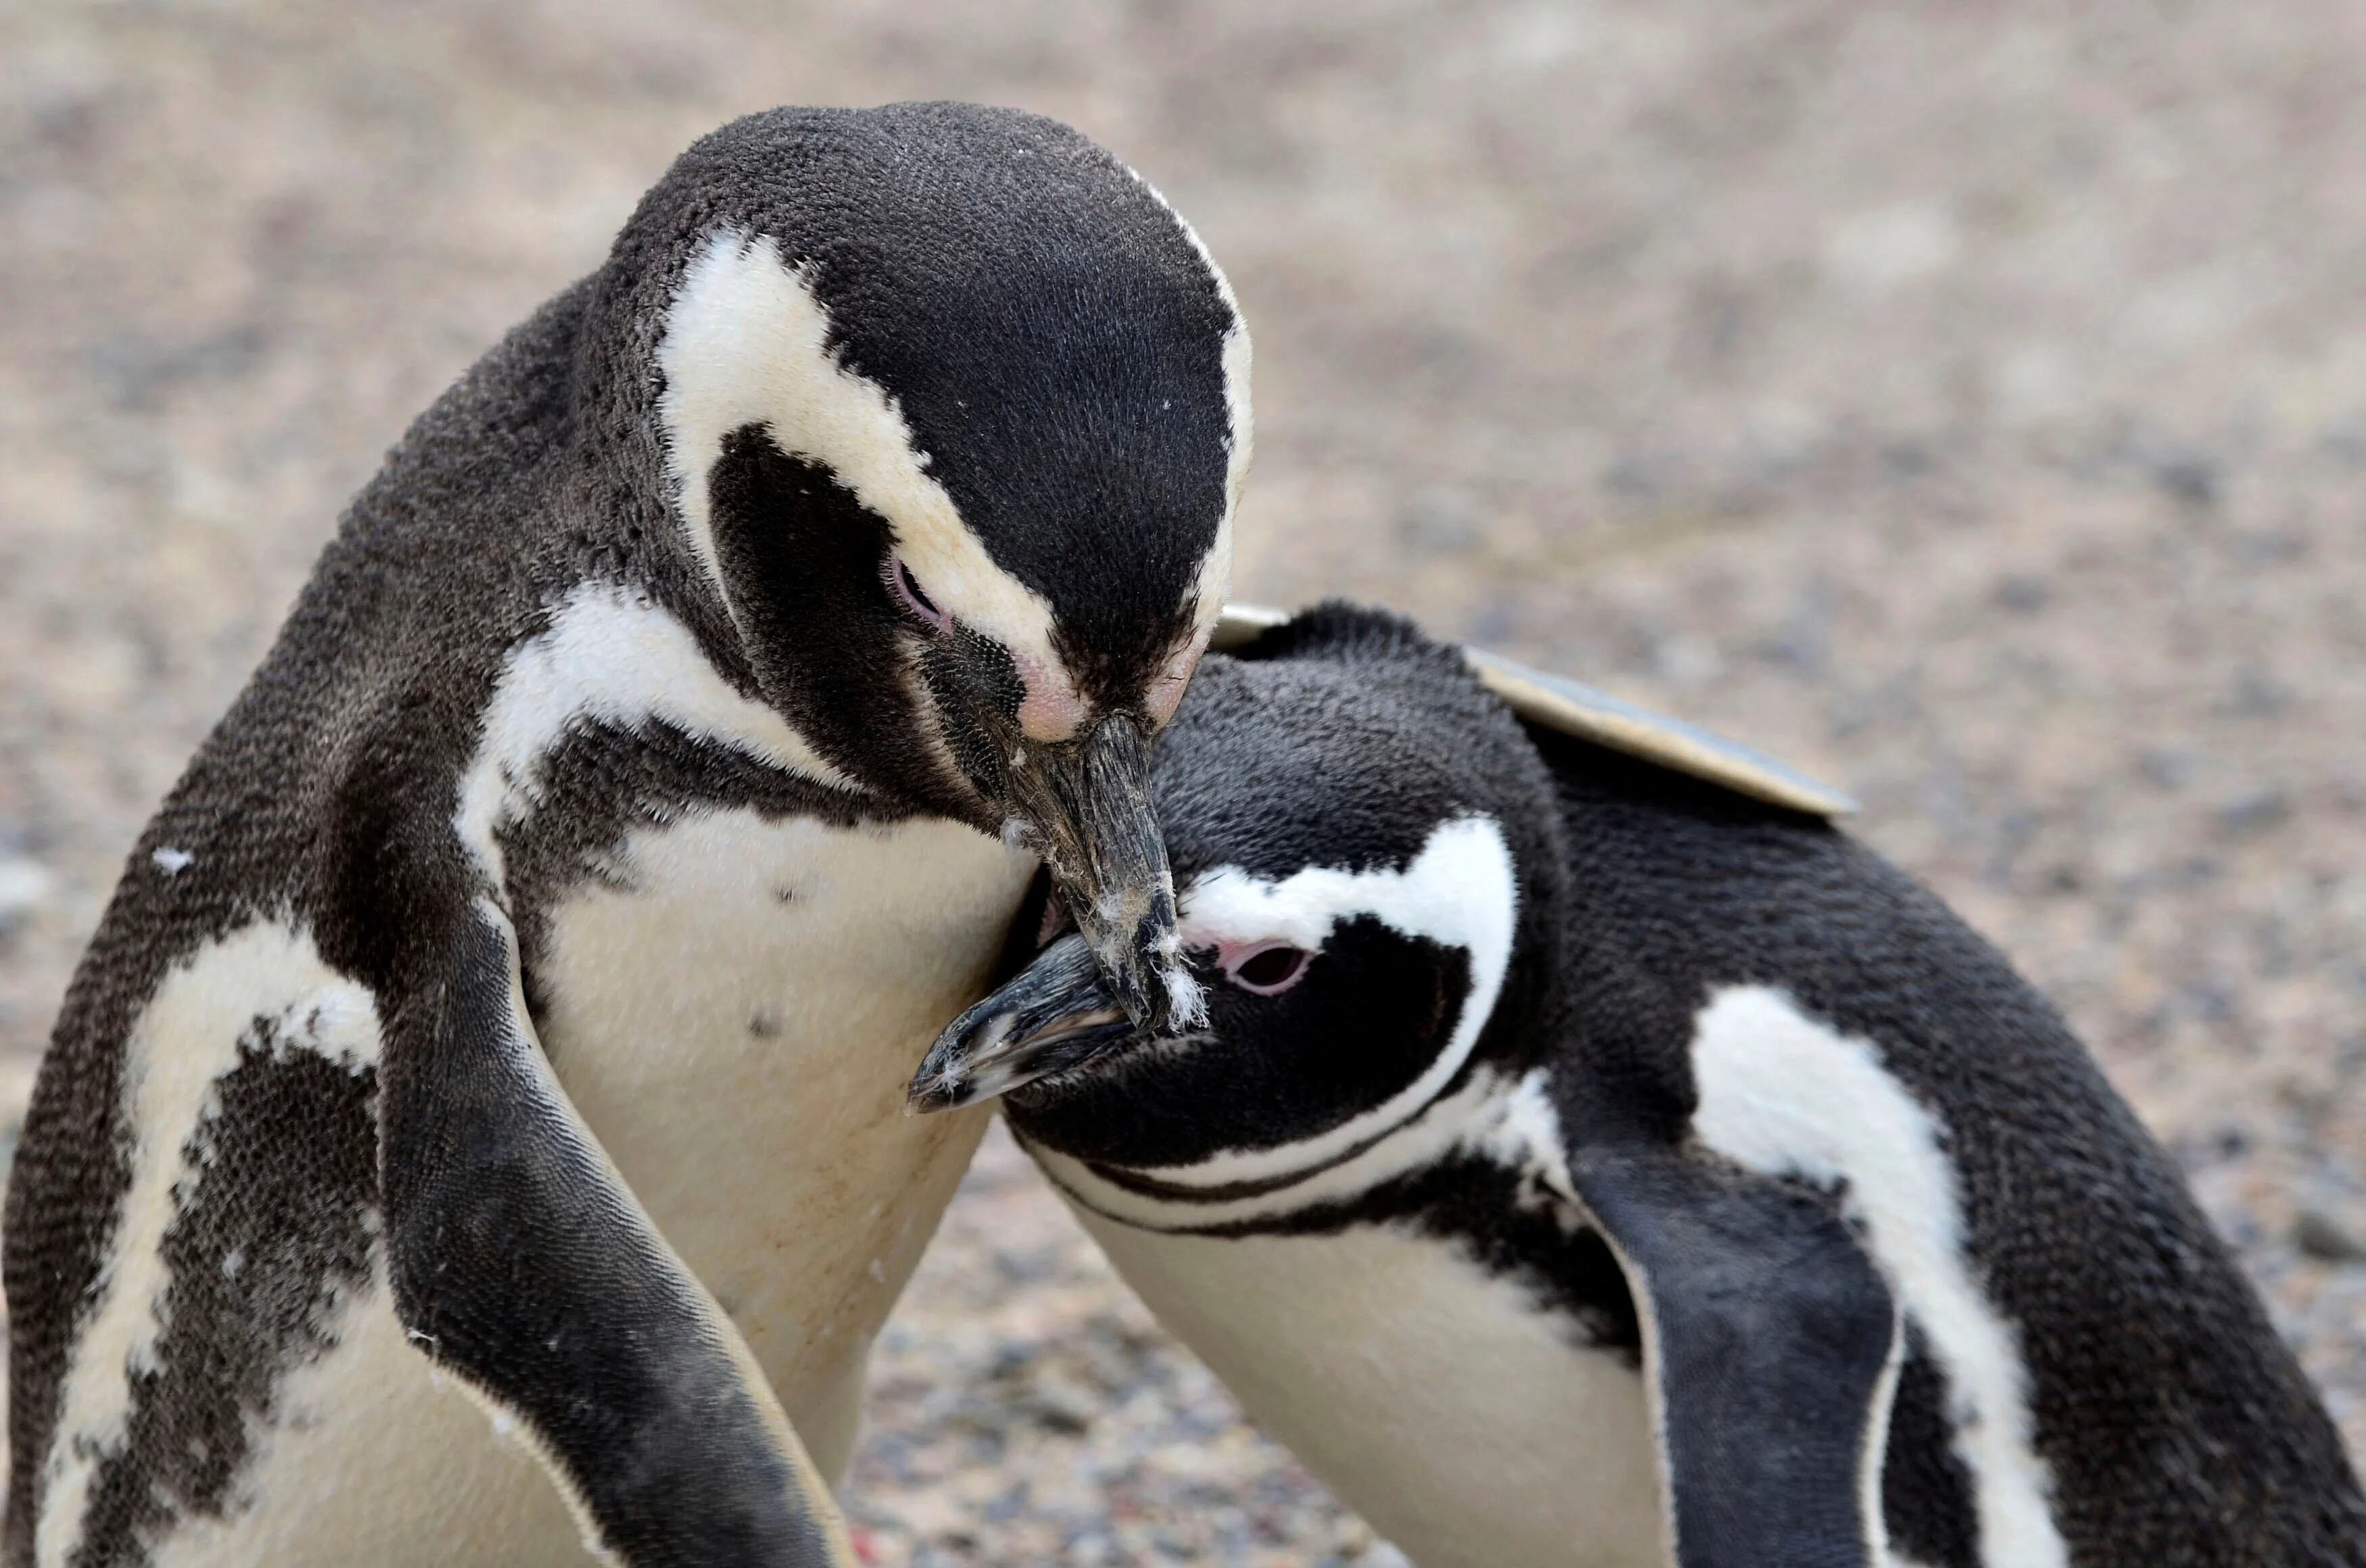 Los pingüinos de Magallanes pueden morir deshidratados por el calor. Además los afectan otros disturbios causados por humanos como el avance de topadoras o la presencia masiva de turistas (REUTERS/Maxi Jonas)